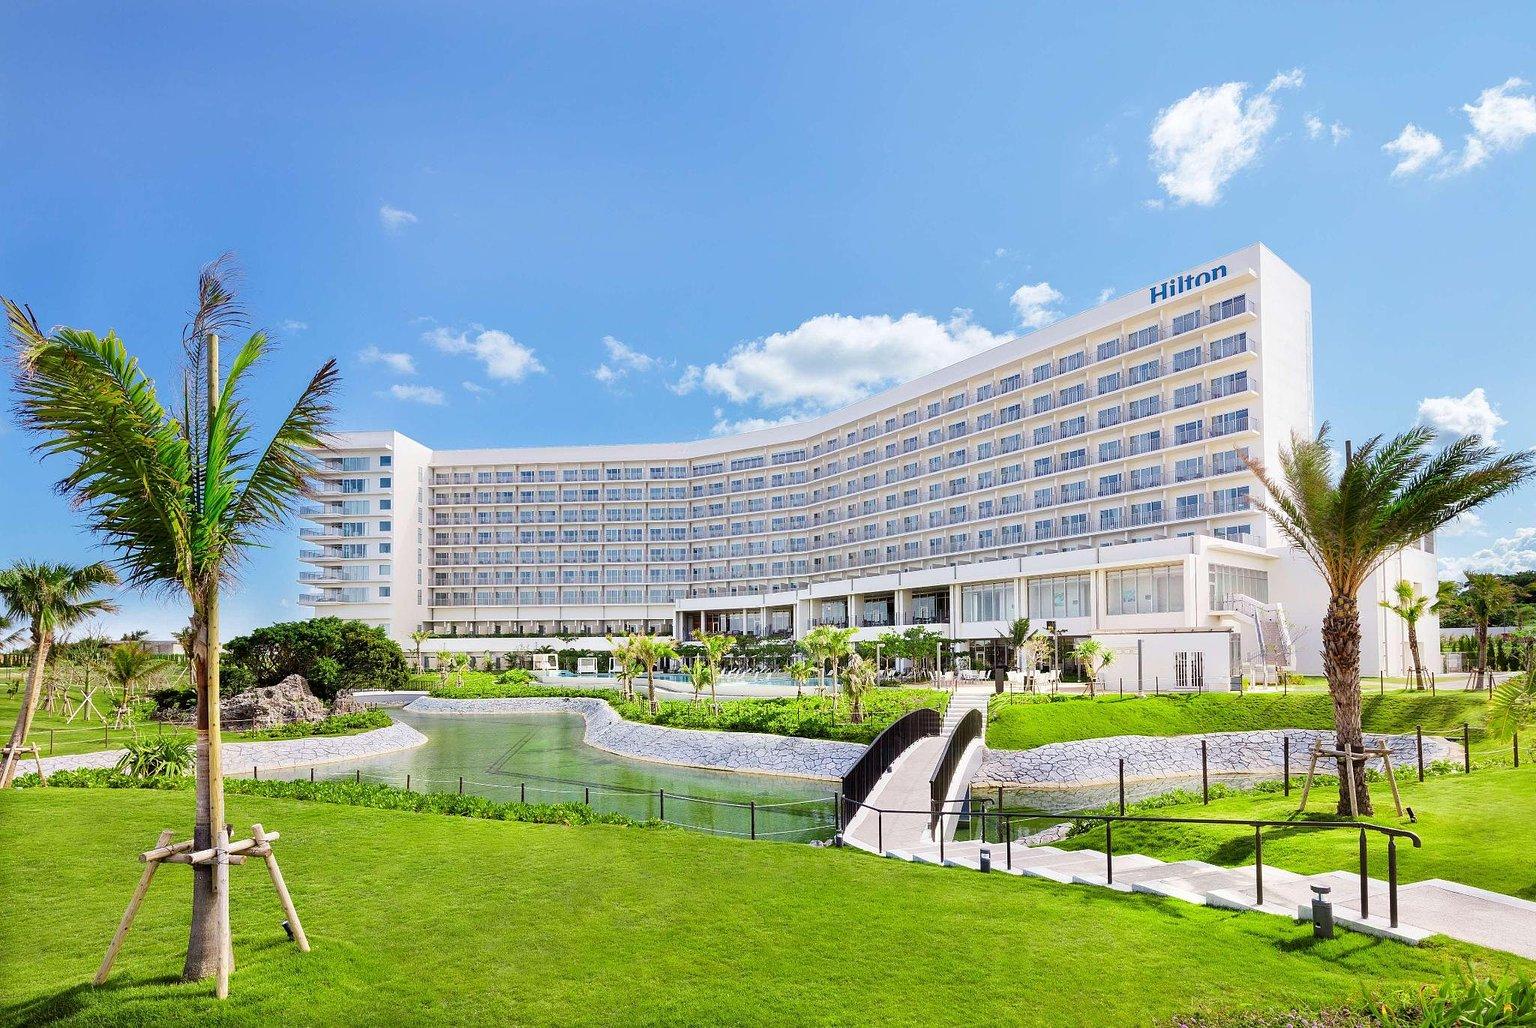 沖繩瀨底希爾頓度假酒店 / Hilton Okinawa Sesoko Resort